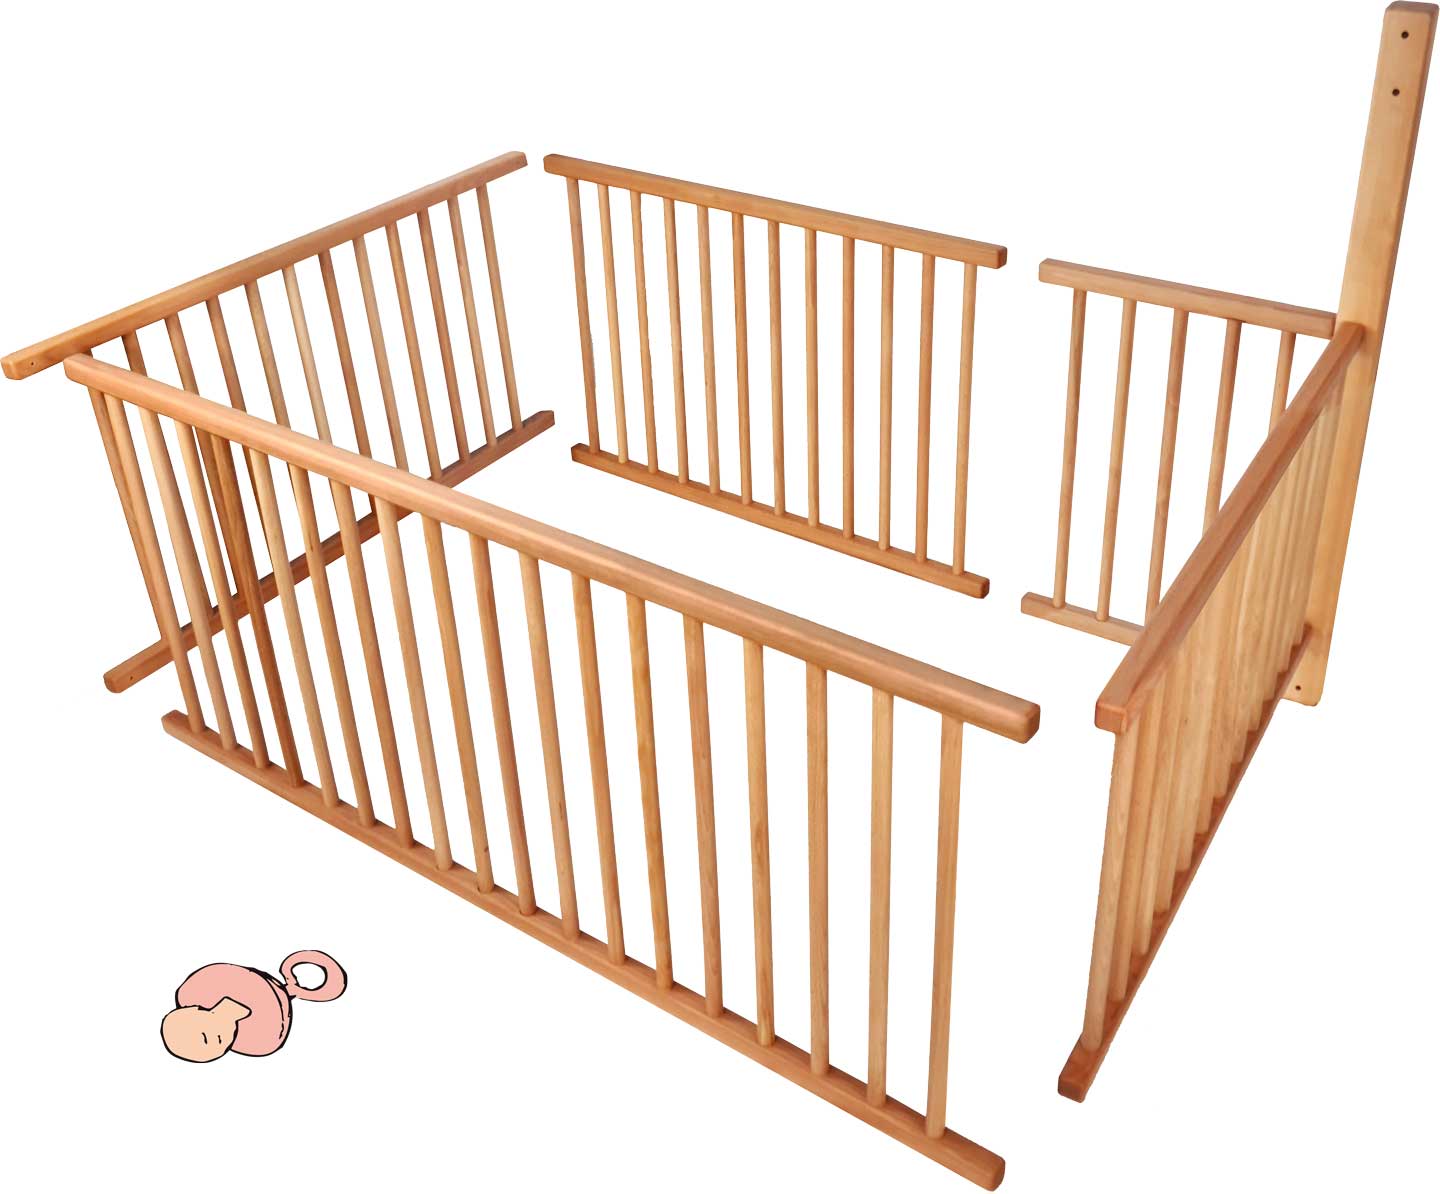 Rešetka za bebe postavljena za krevet na kat sa standardnim stopalima (196 cm) i položajem ljestava A za 3/4 ležeće površine, uključujući dodatno potrebnu gredu**